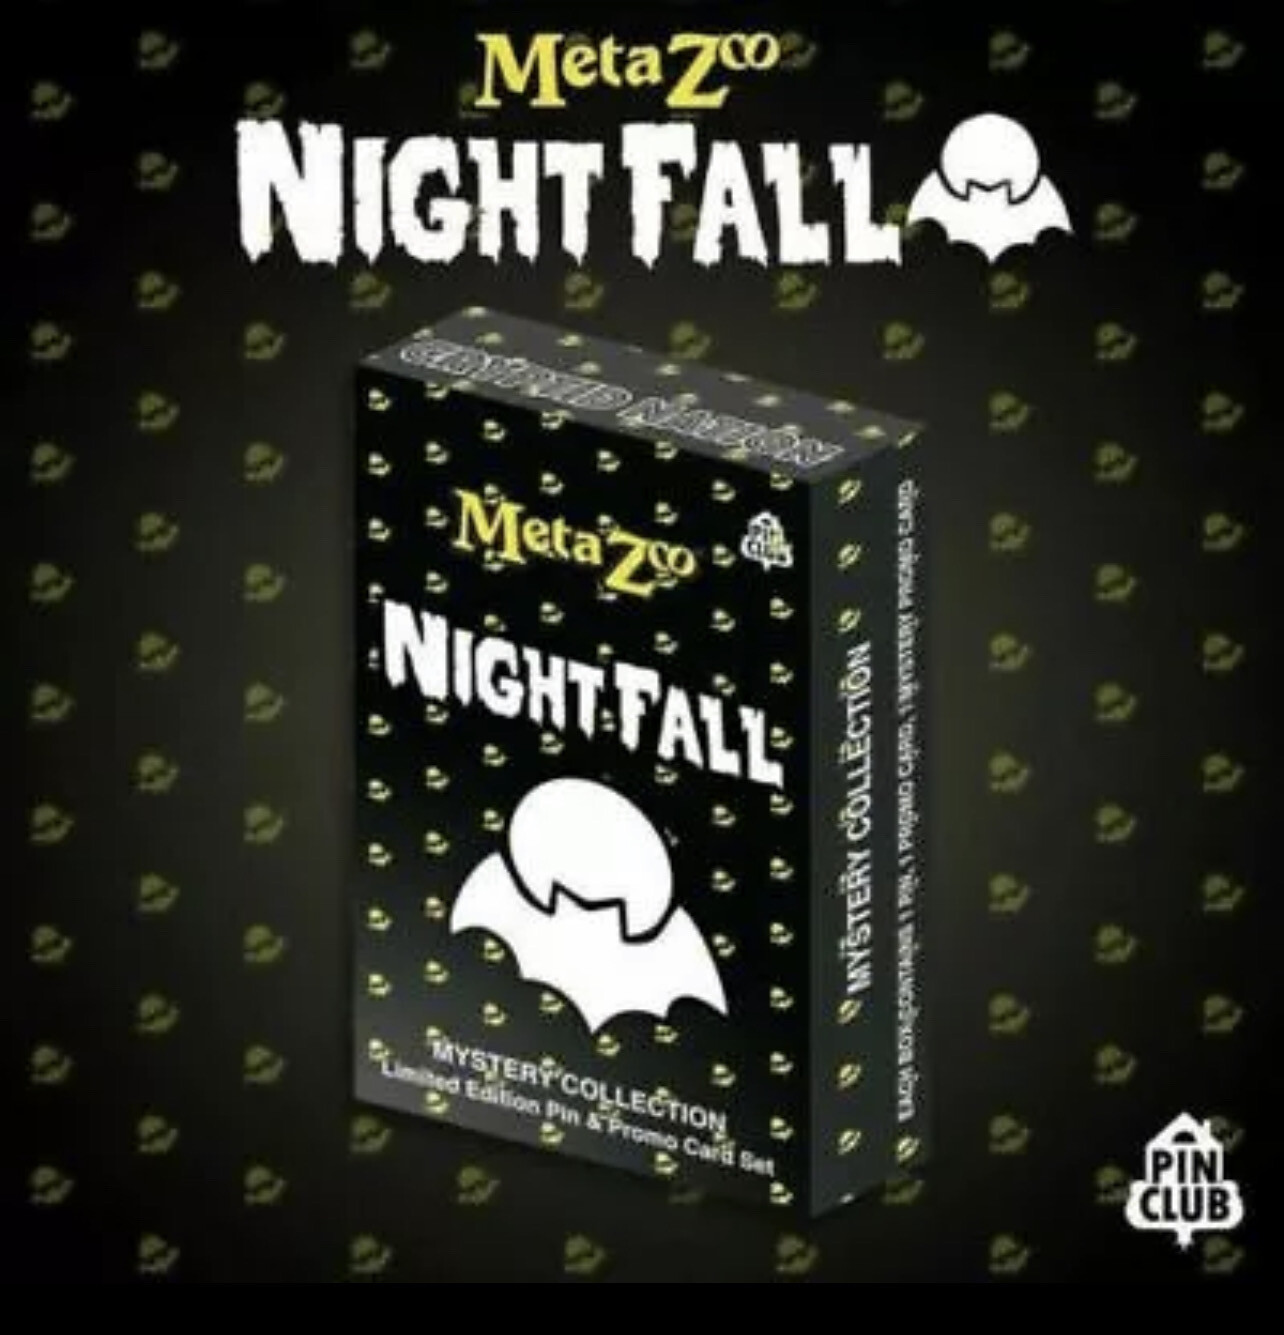 MetaZoo Nightfall Pin Club Box